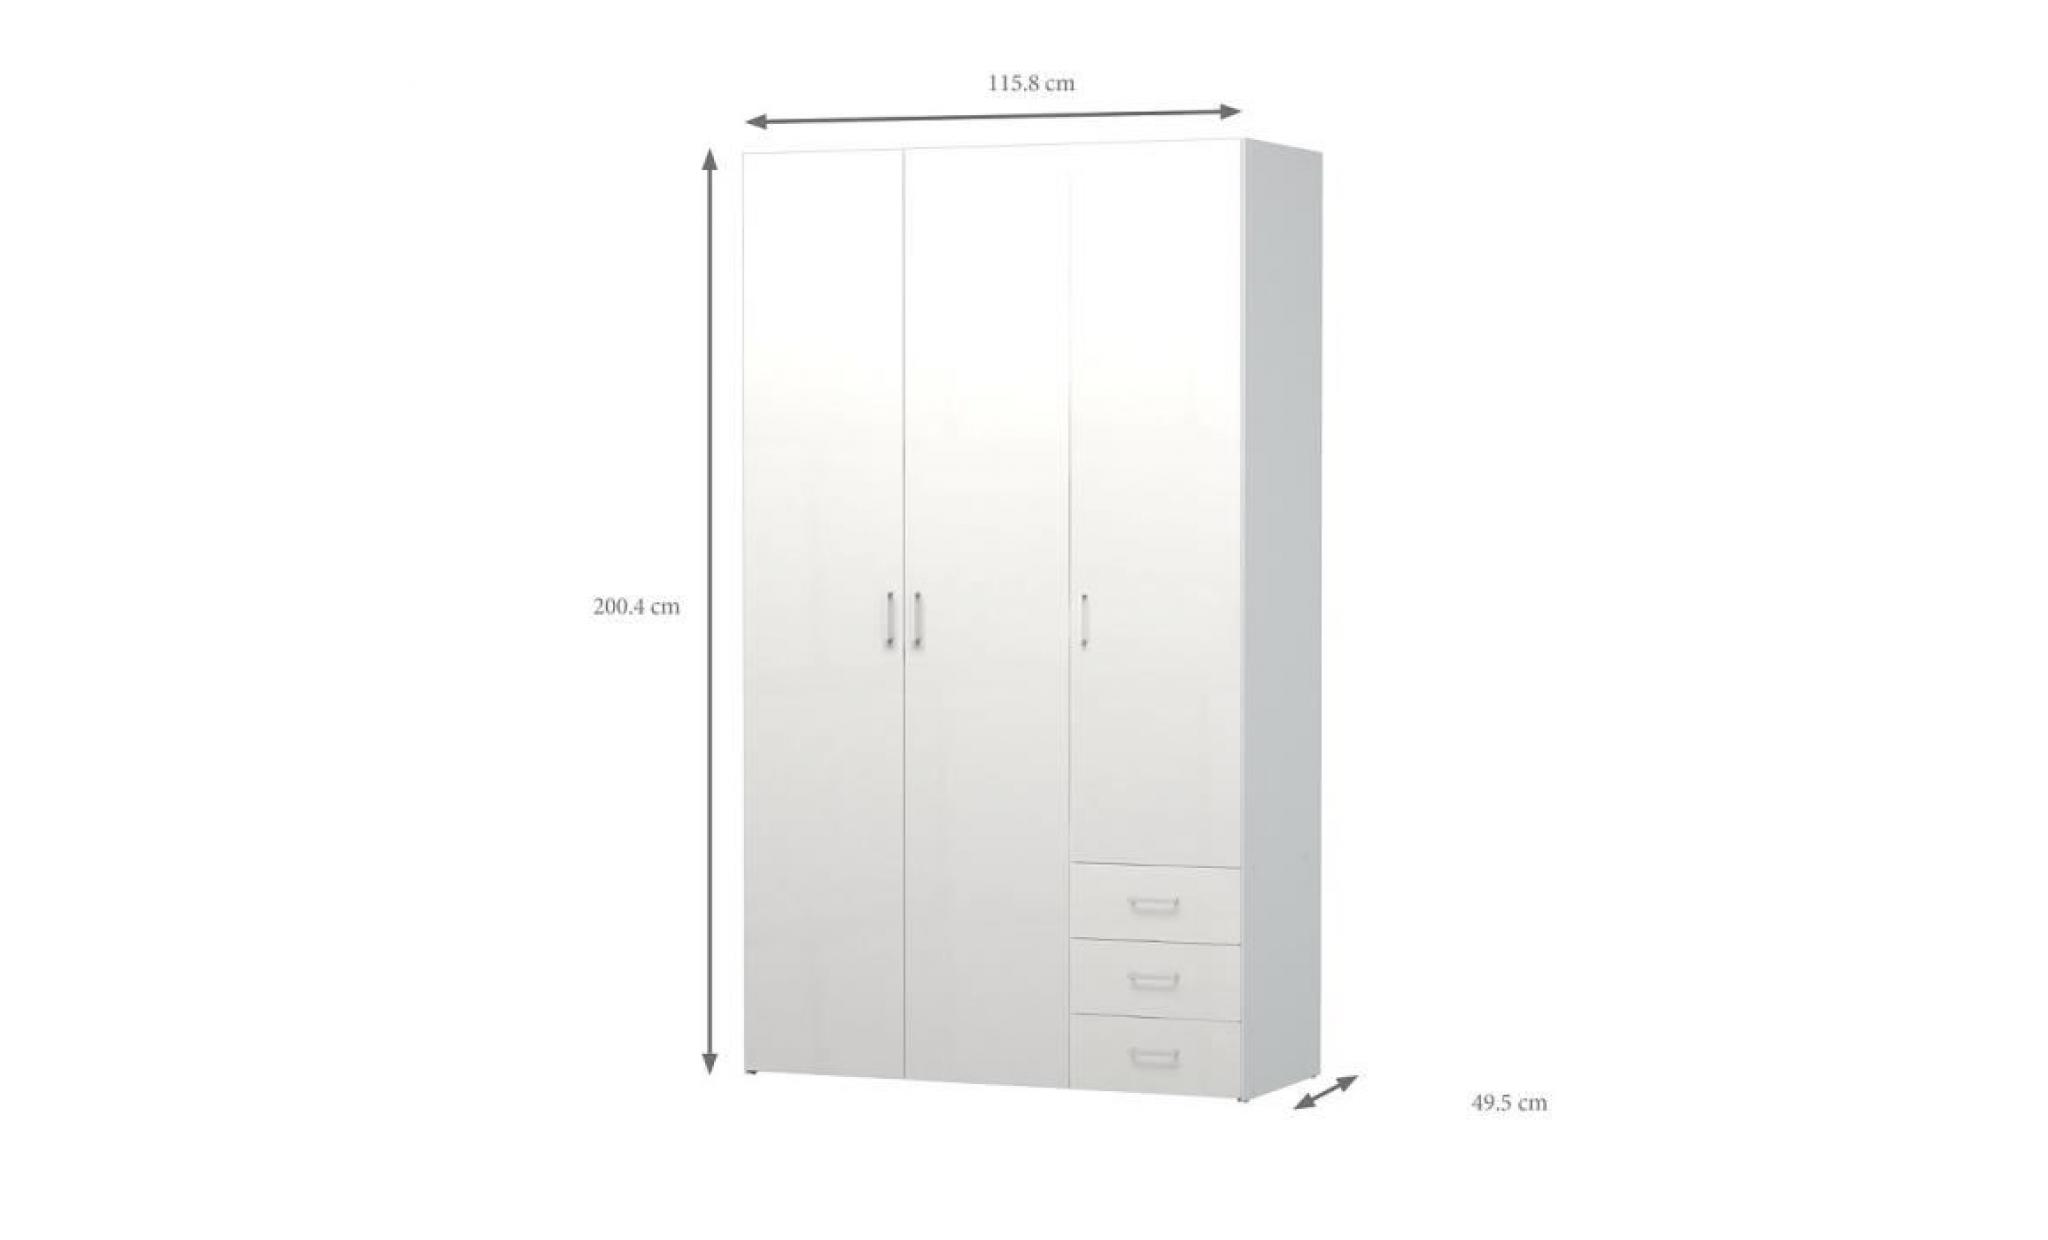 space armoire de chambre style contemporain blanc mat   l 115,8 cm pas cher